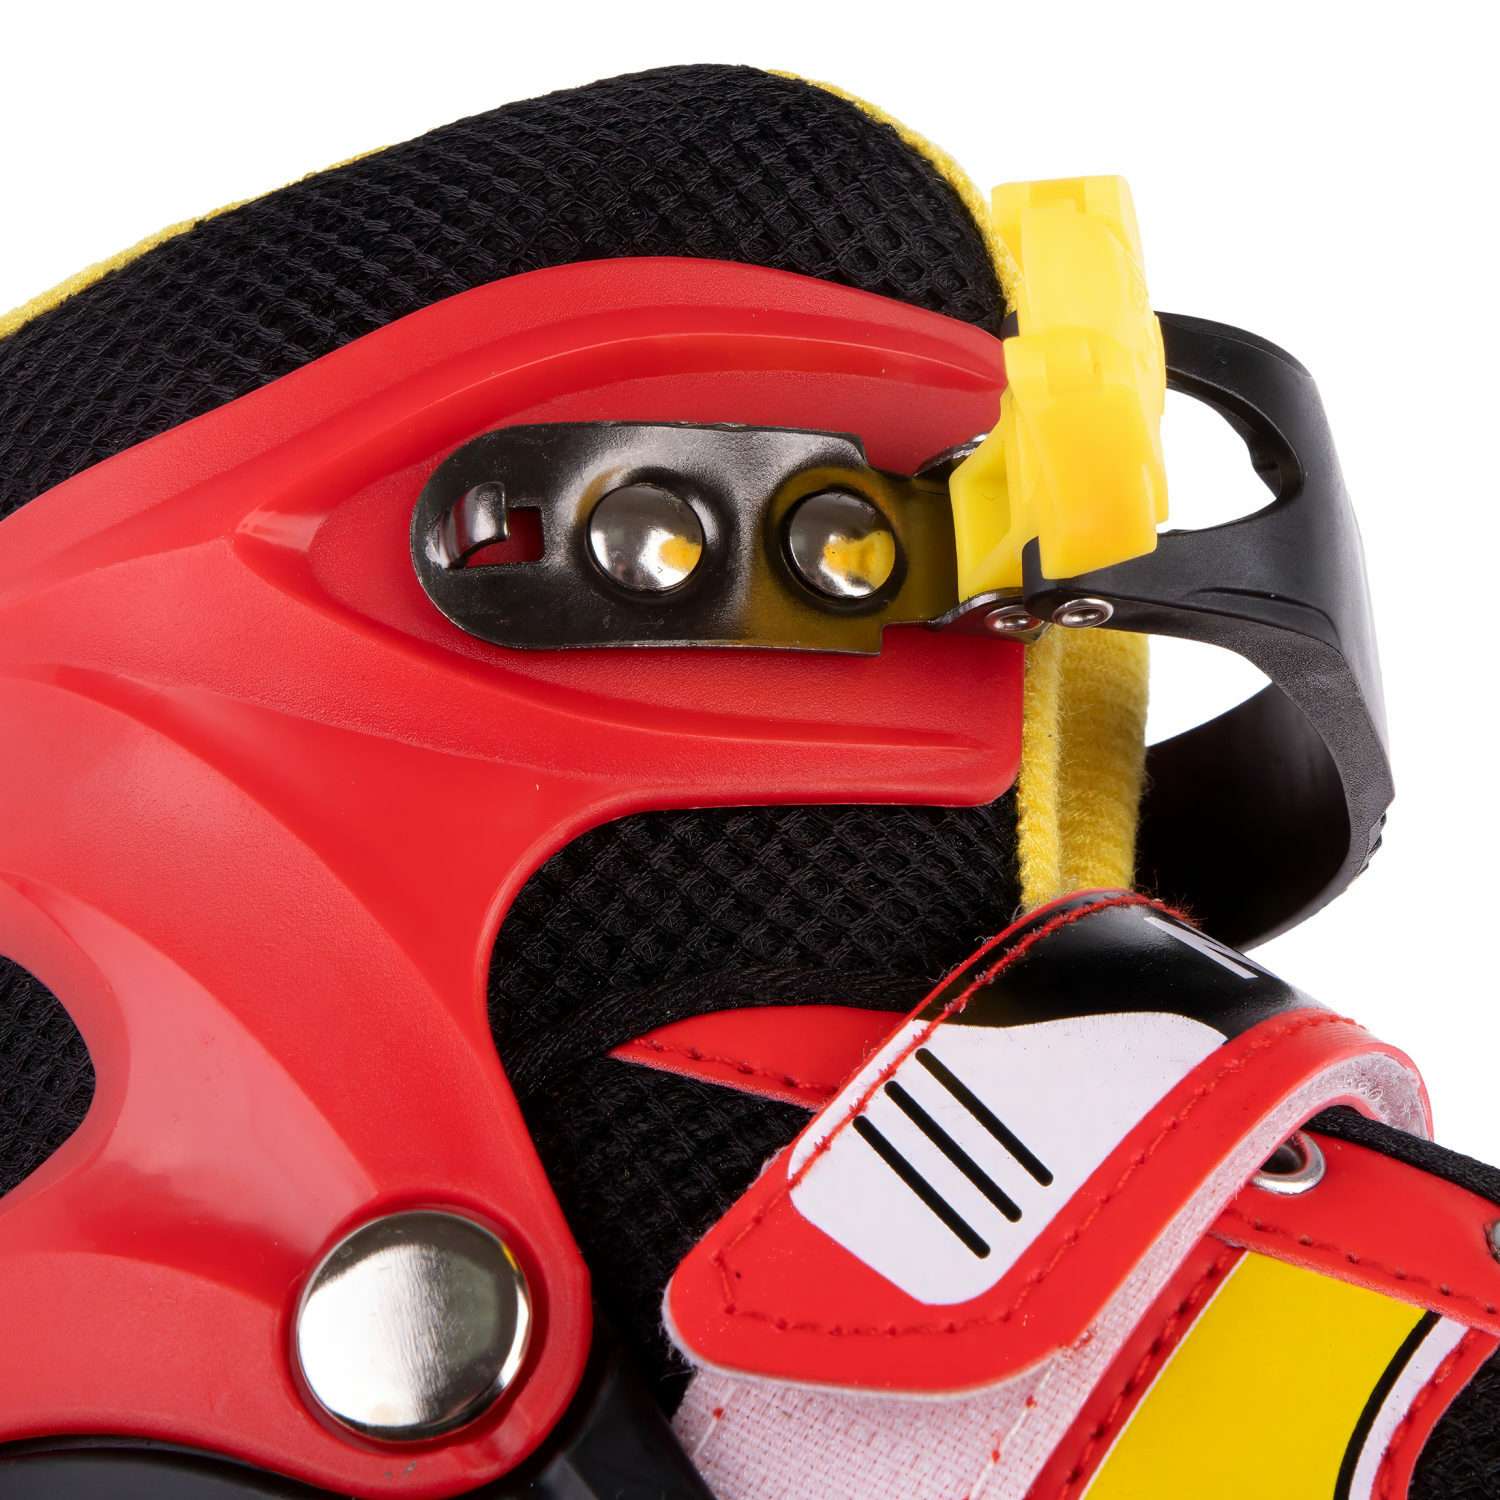 Ролики Navigator детские раздвижные 34 - 37 размер с защитой и шлемом красный - фото 9